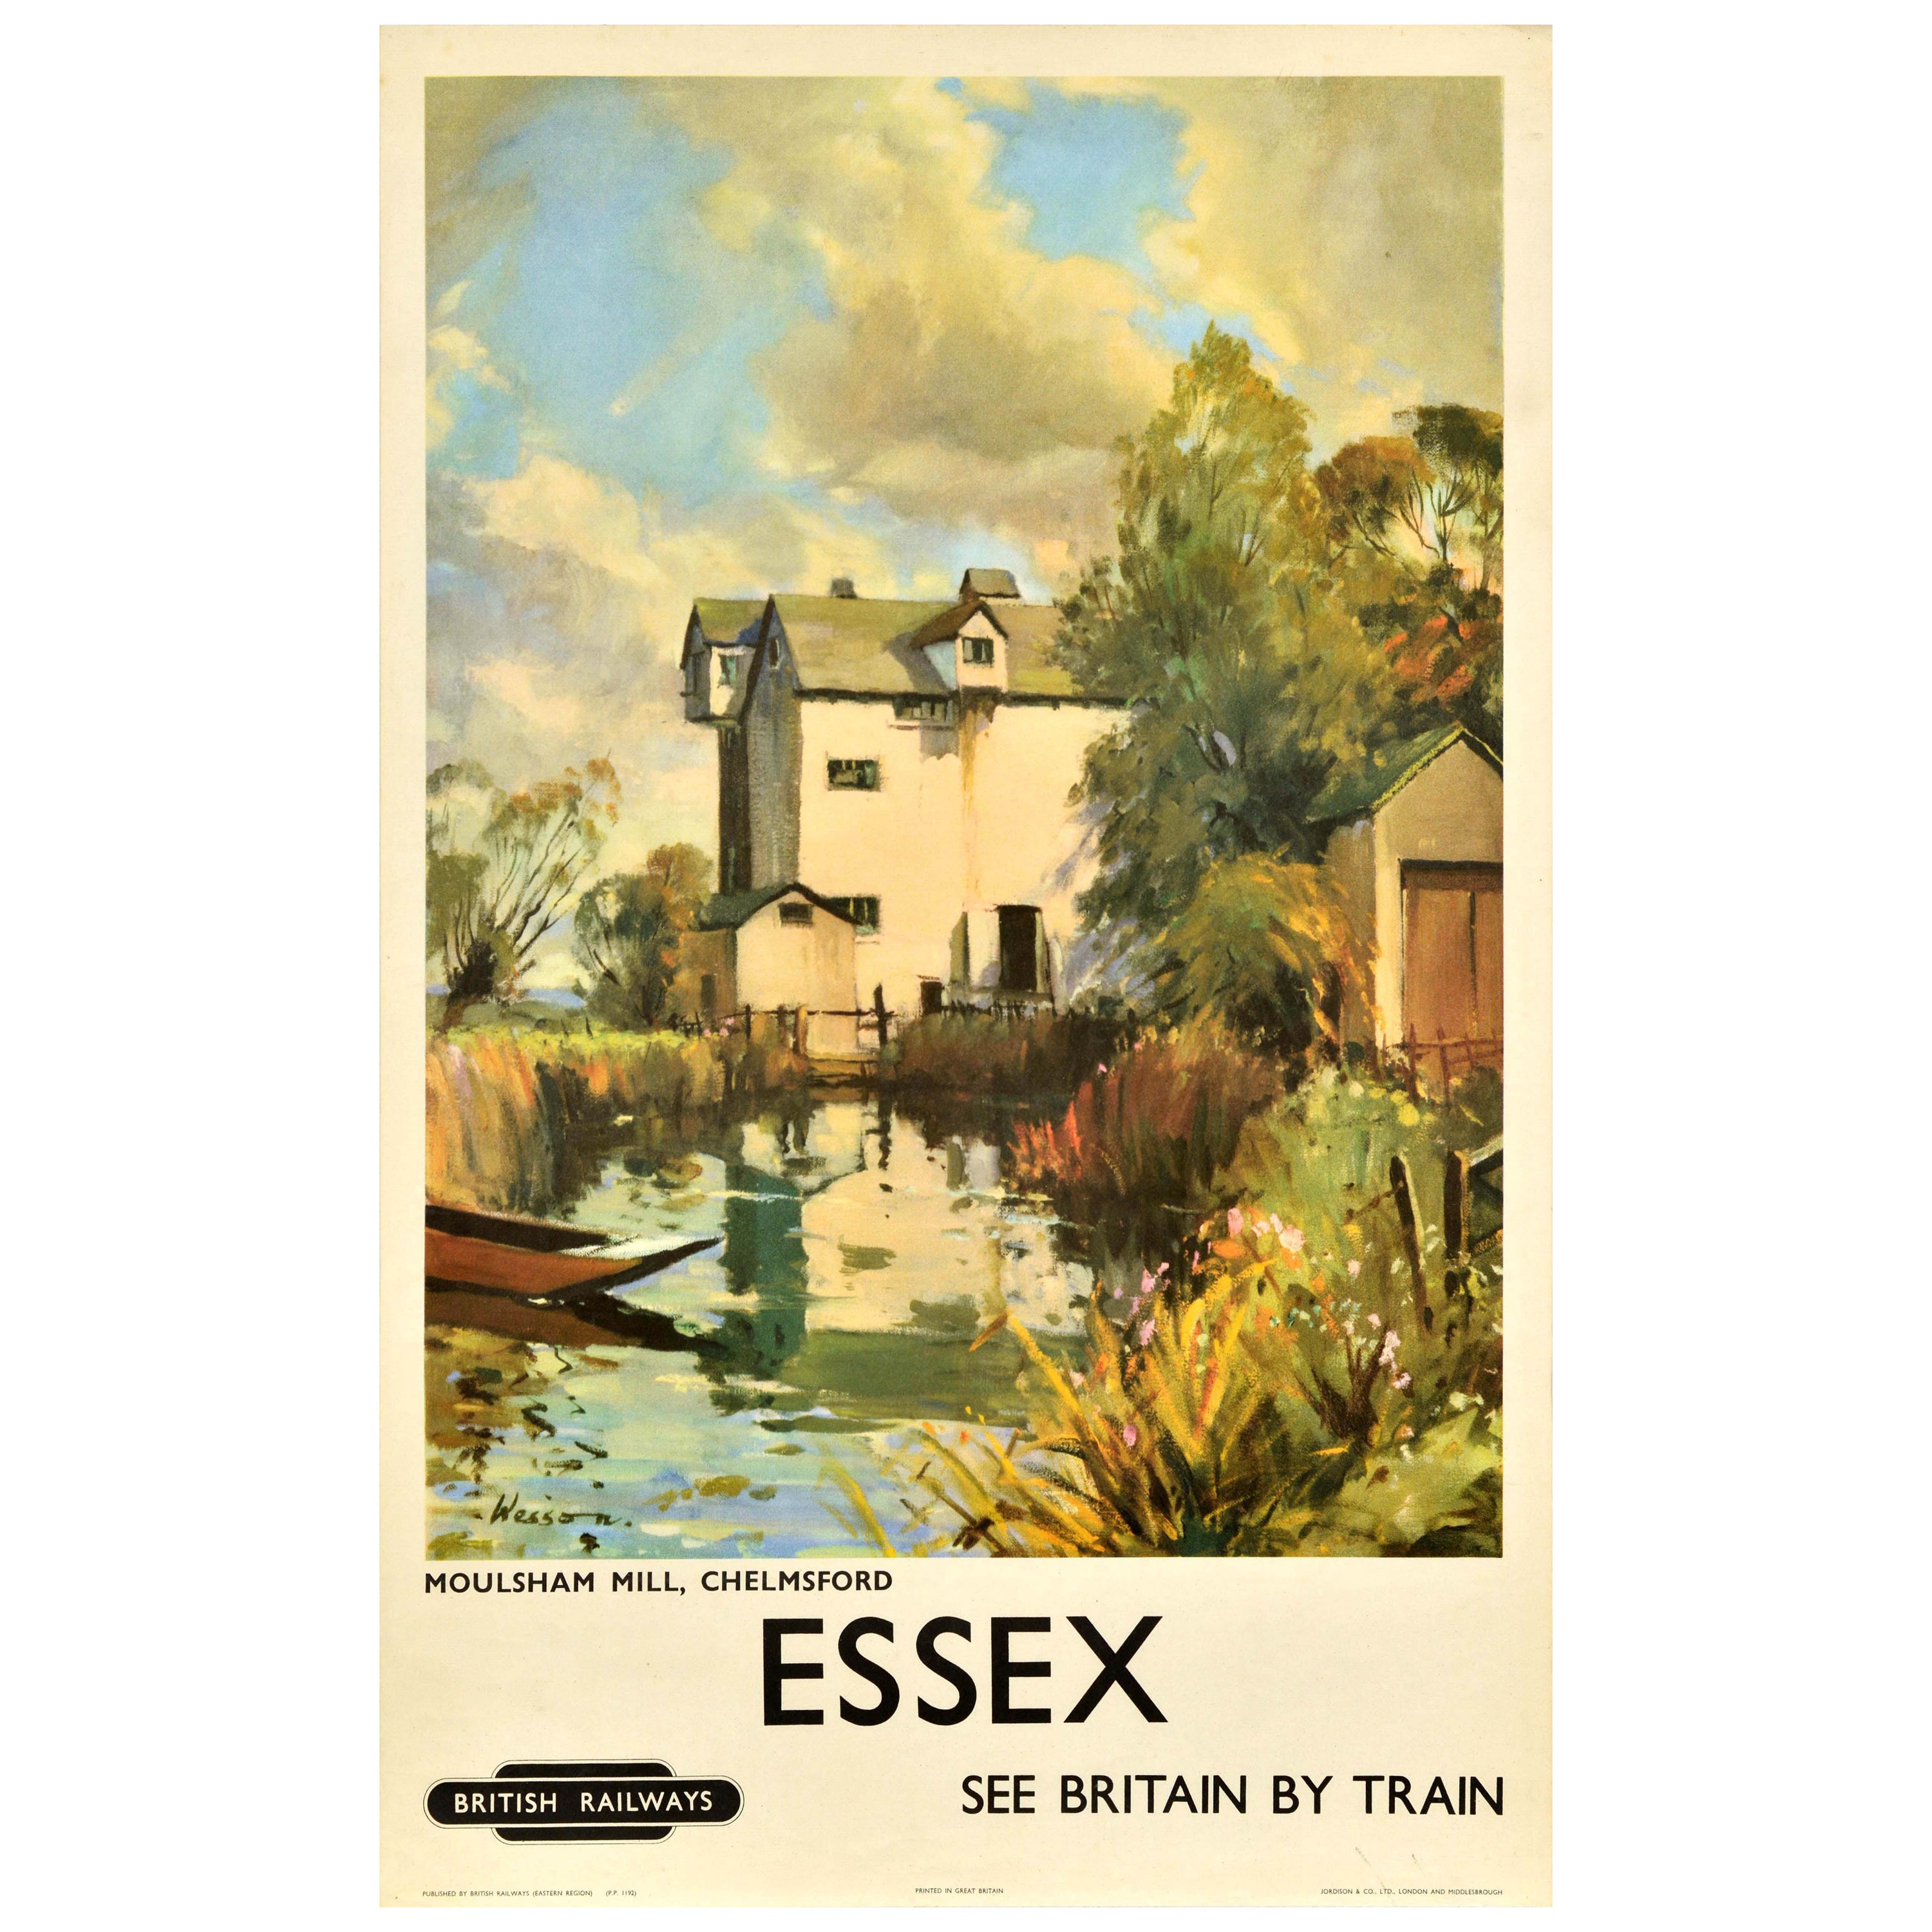 Original Vintage Travel Poster Essex Moulsham Mill Chelmsford British Railways For Sale